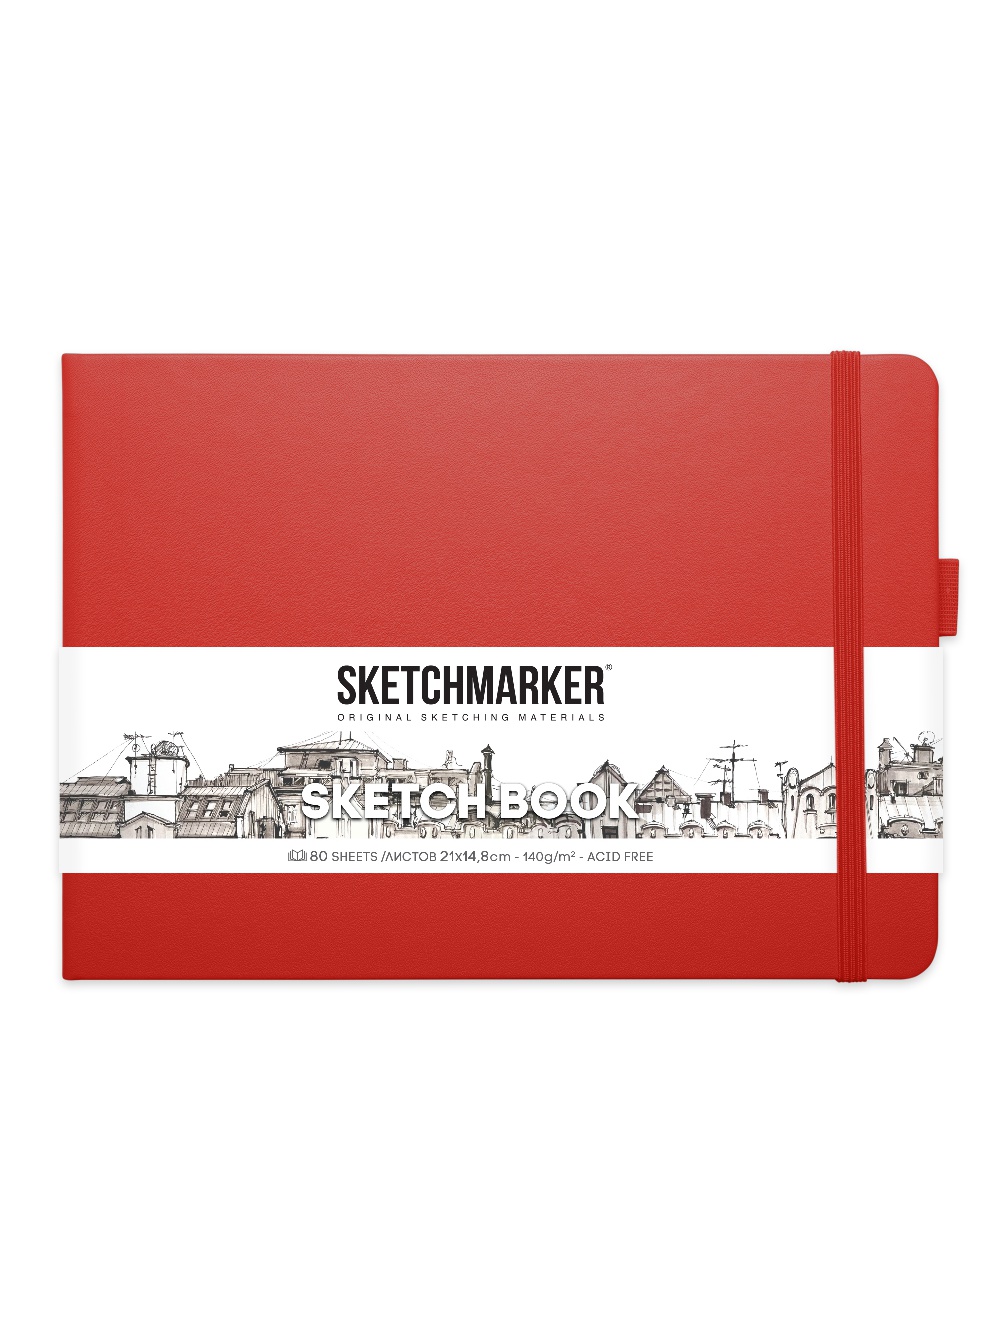 фото Скетчбук sketchmarker 2314204sm 140г/м2 21х14.8см., цвет: красный